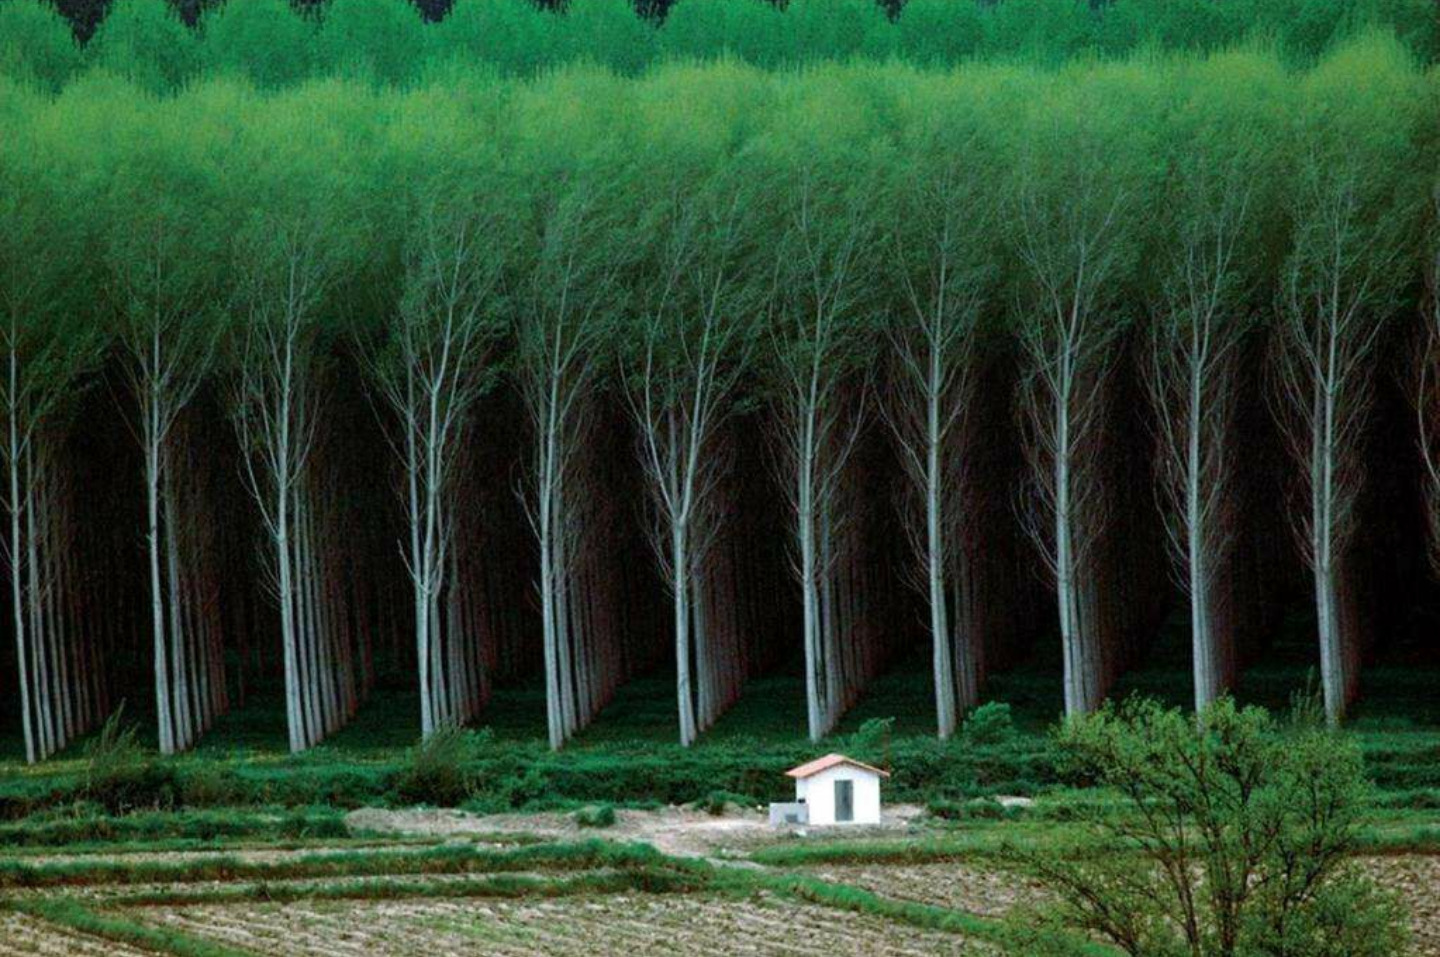 …la façon dont ces arbres sont alignés